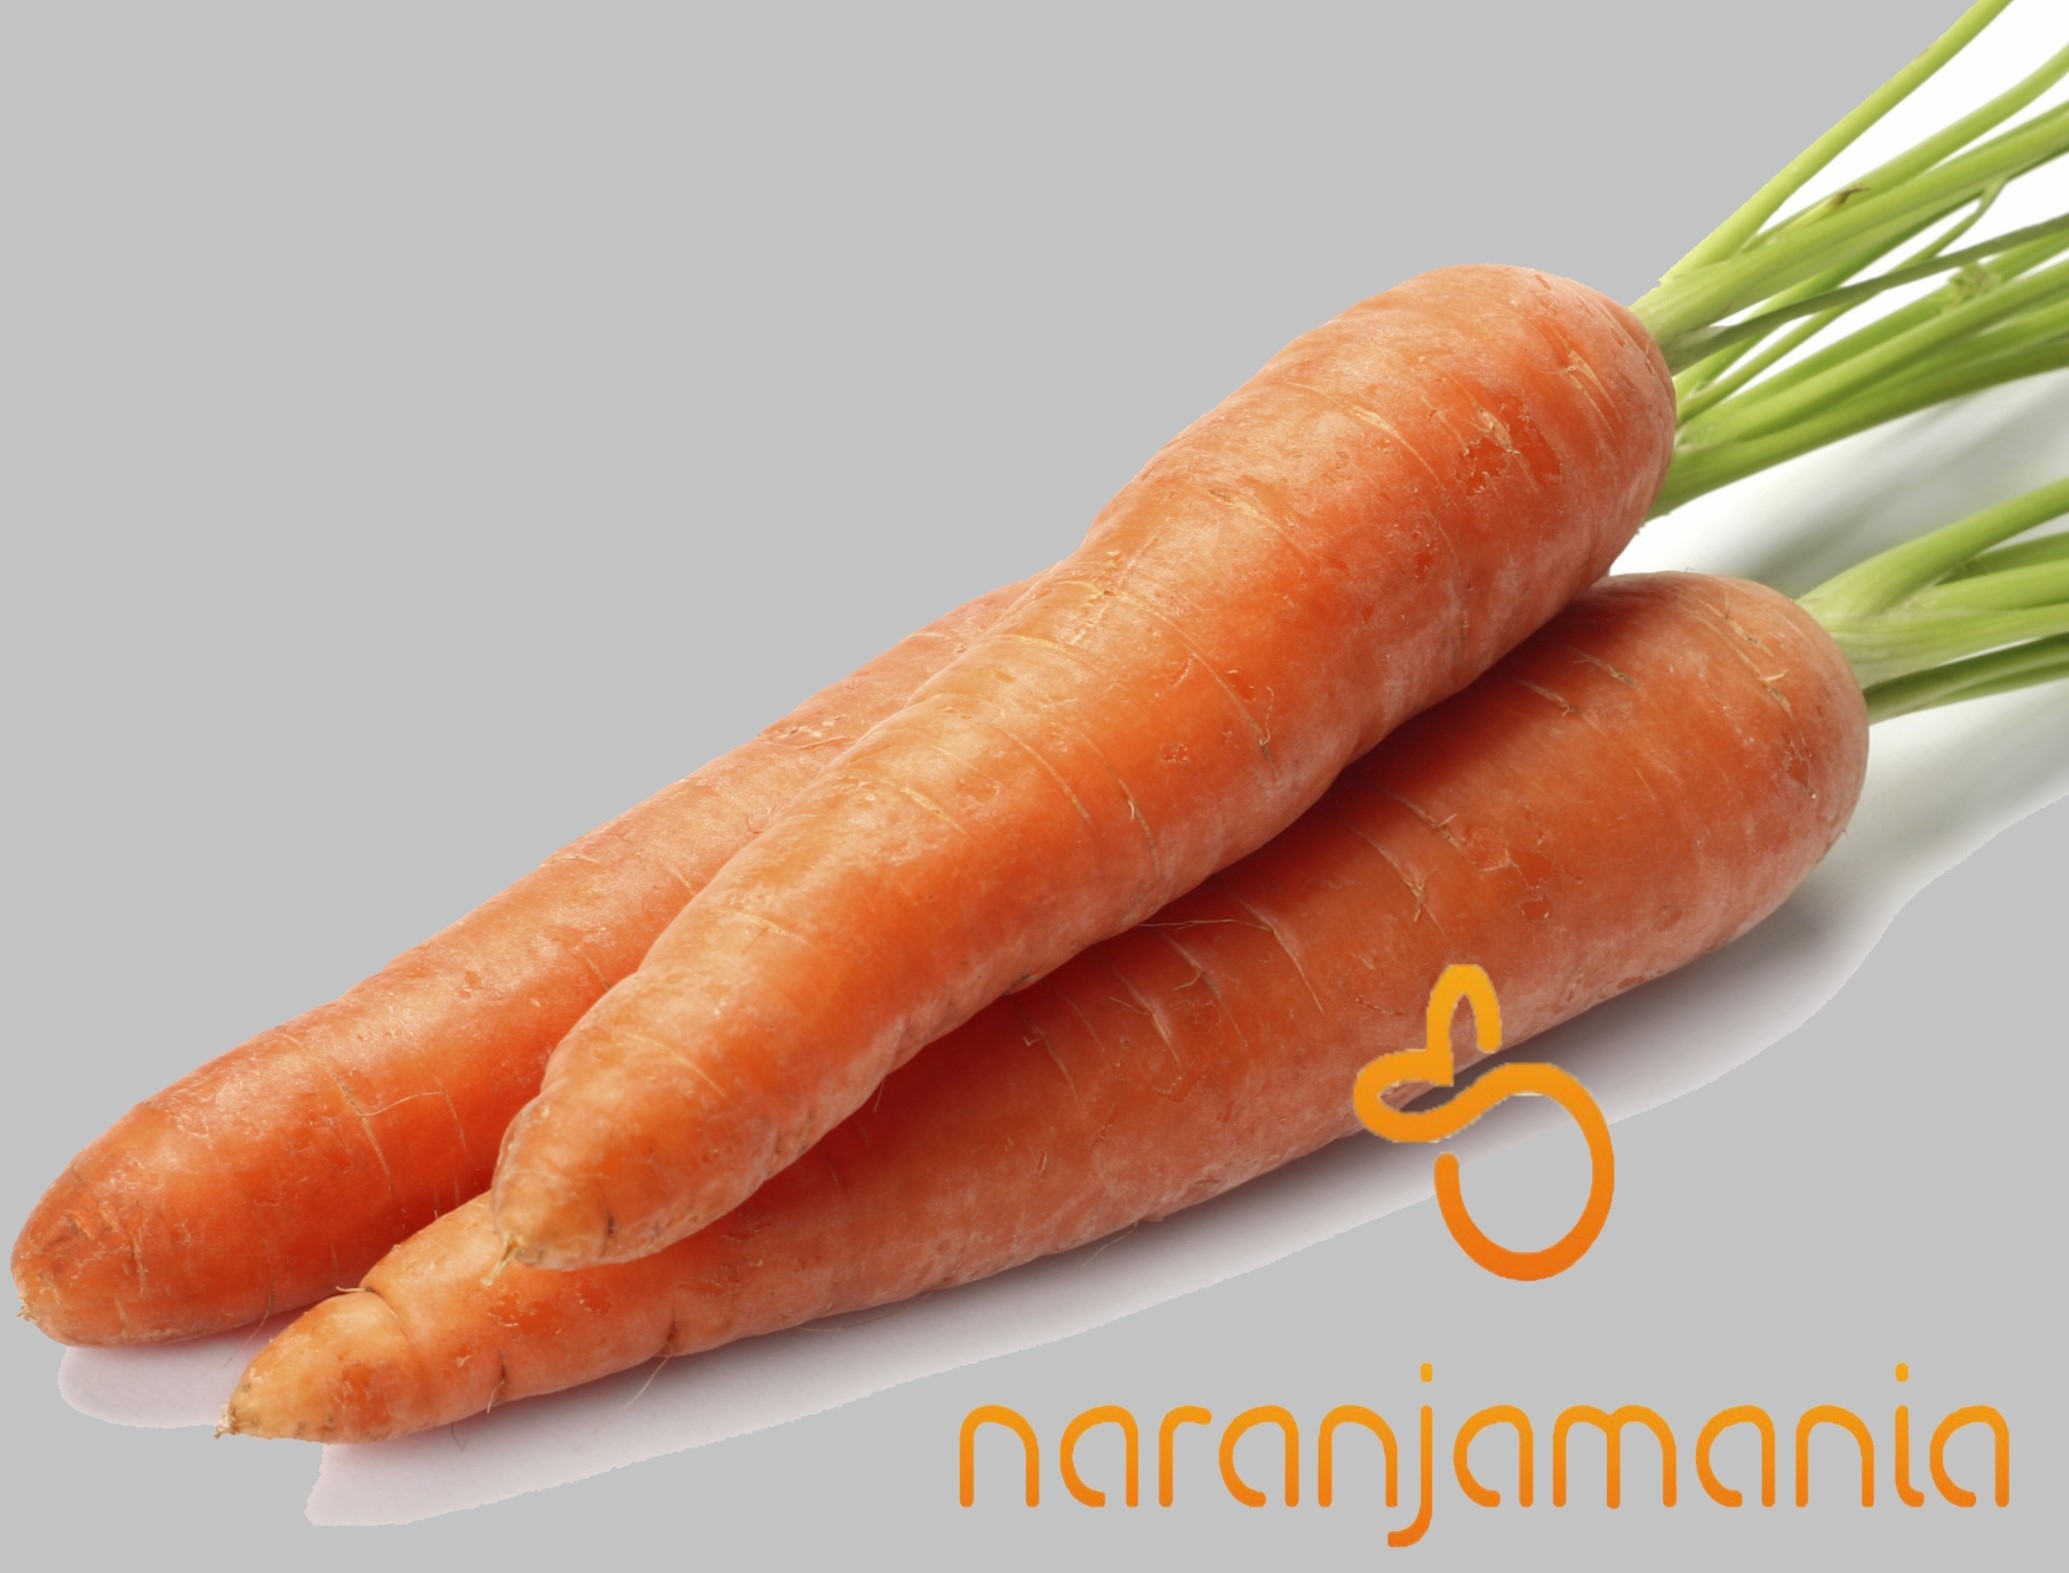 Zanahoria 1kg ✔-0